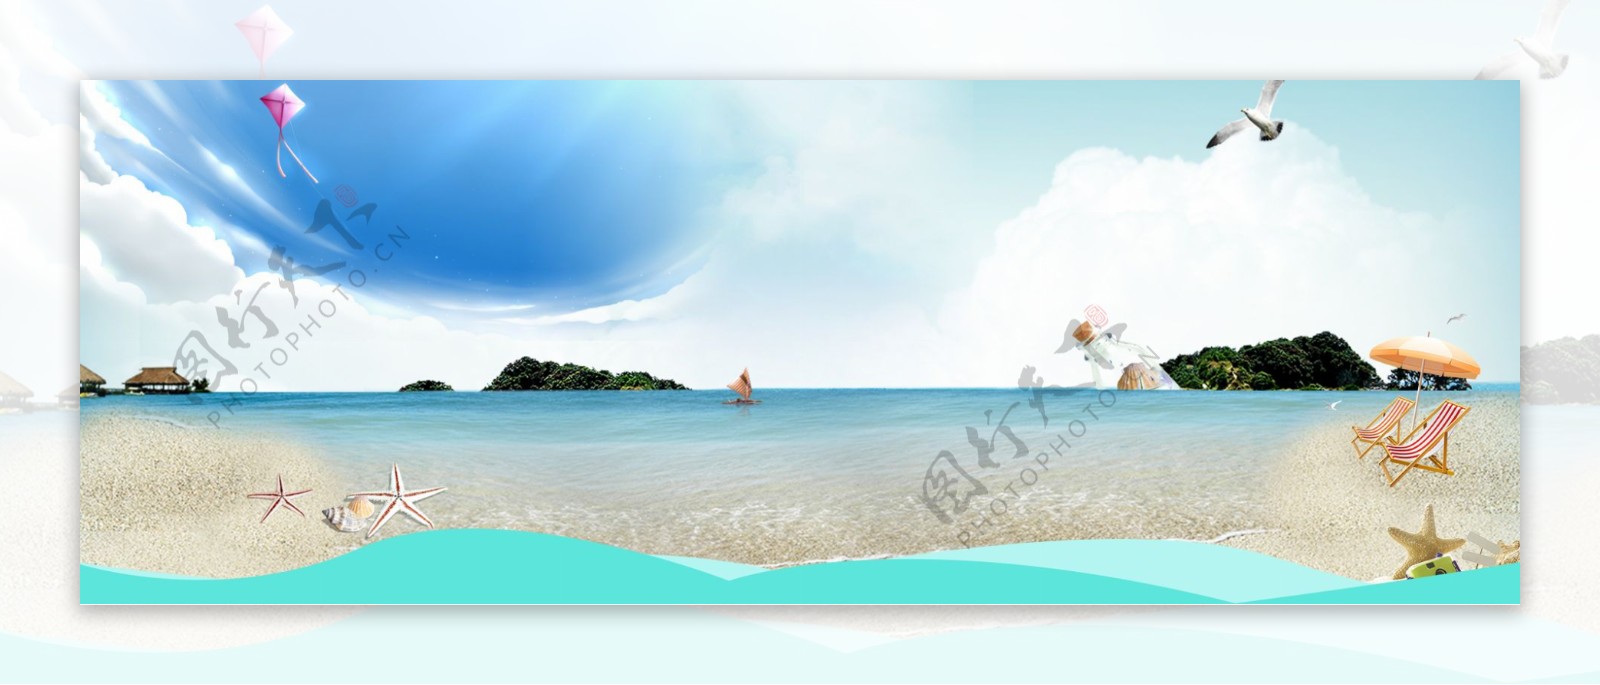 蓝色大海沙滩banner背景素材